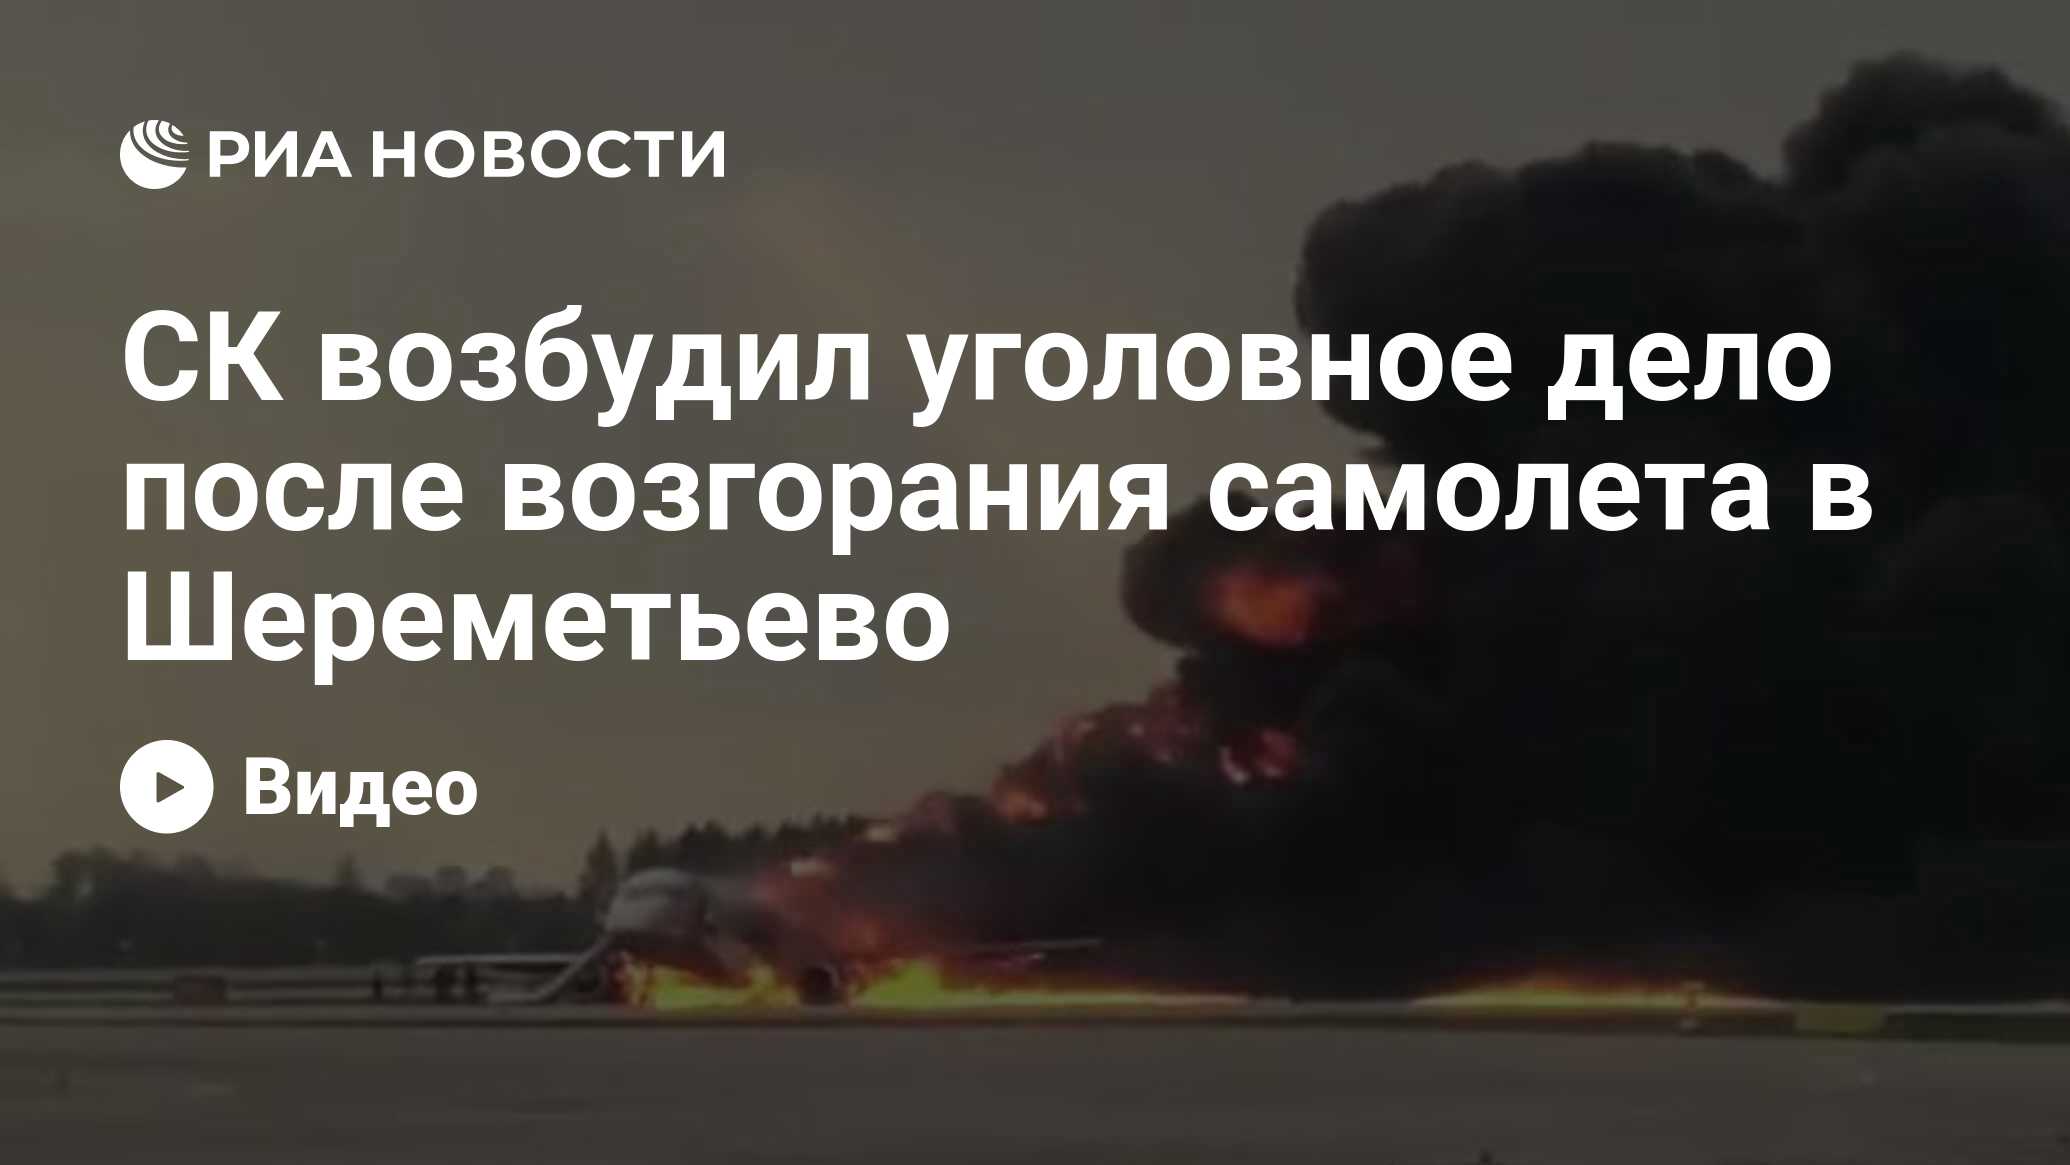 СК возбудил уголовное дело после возгорания самолета в Шереметьево 